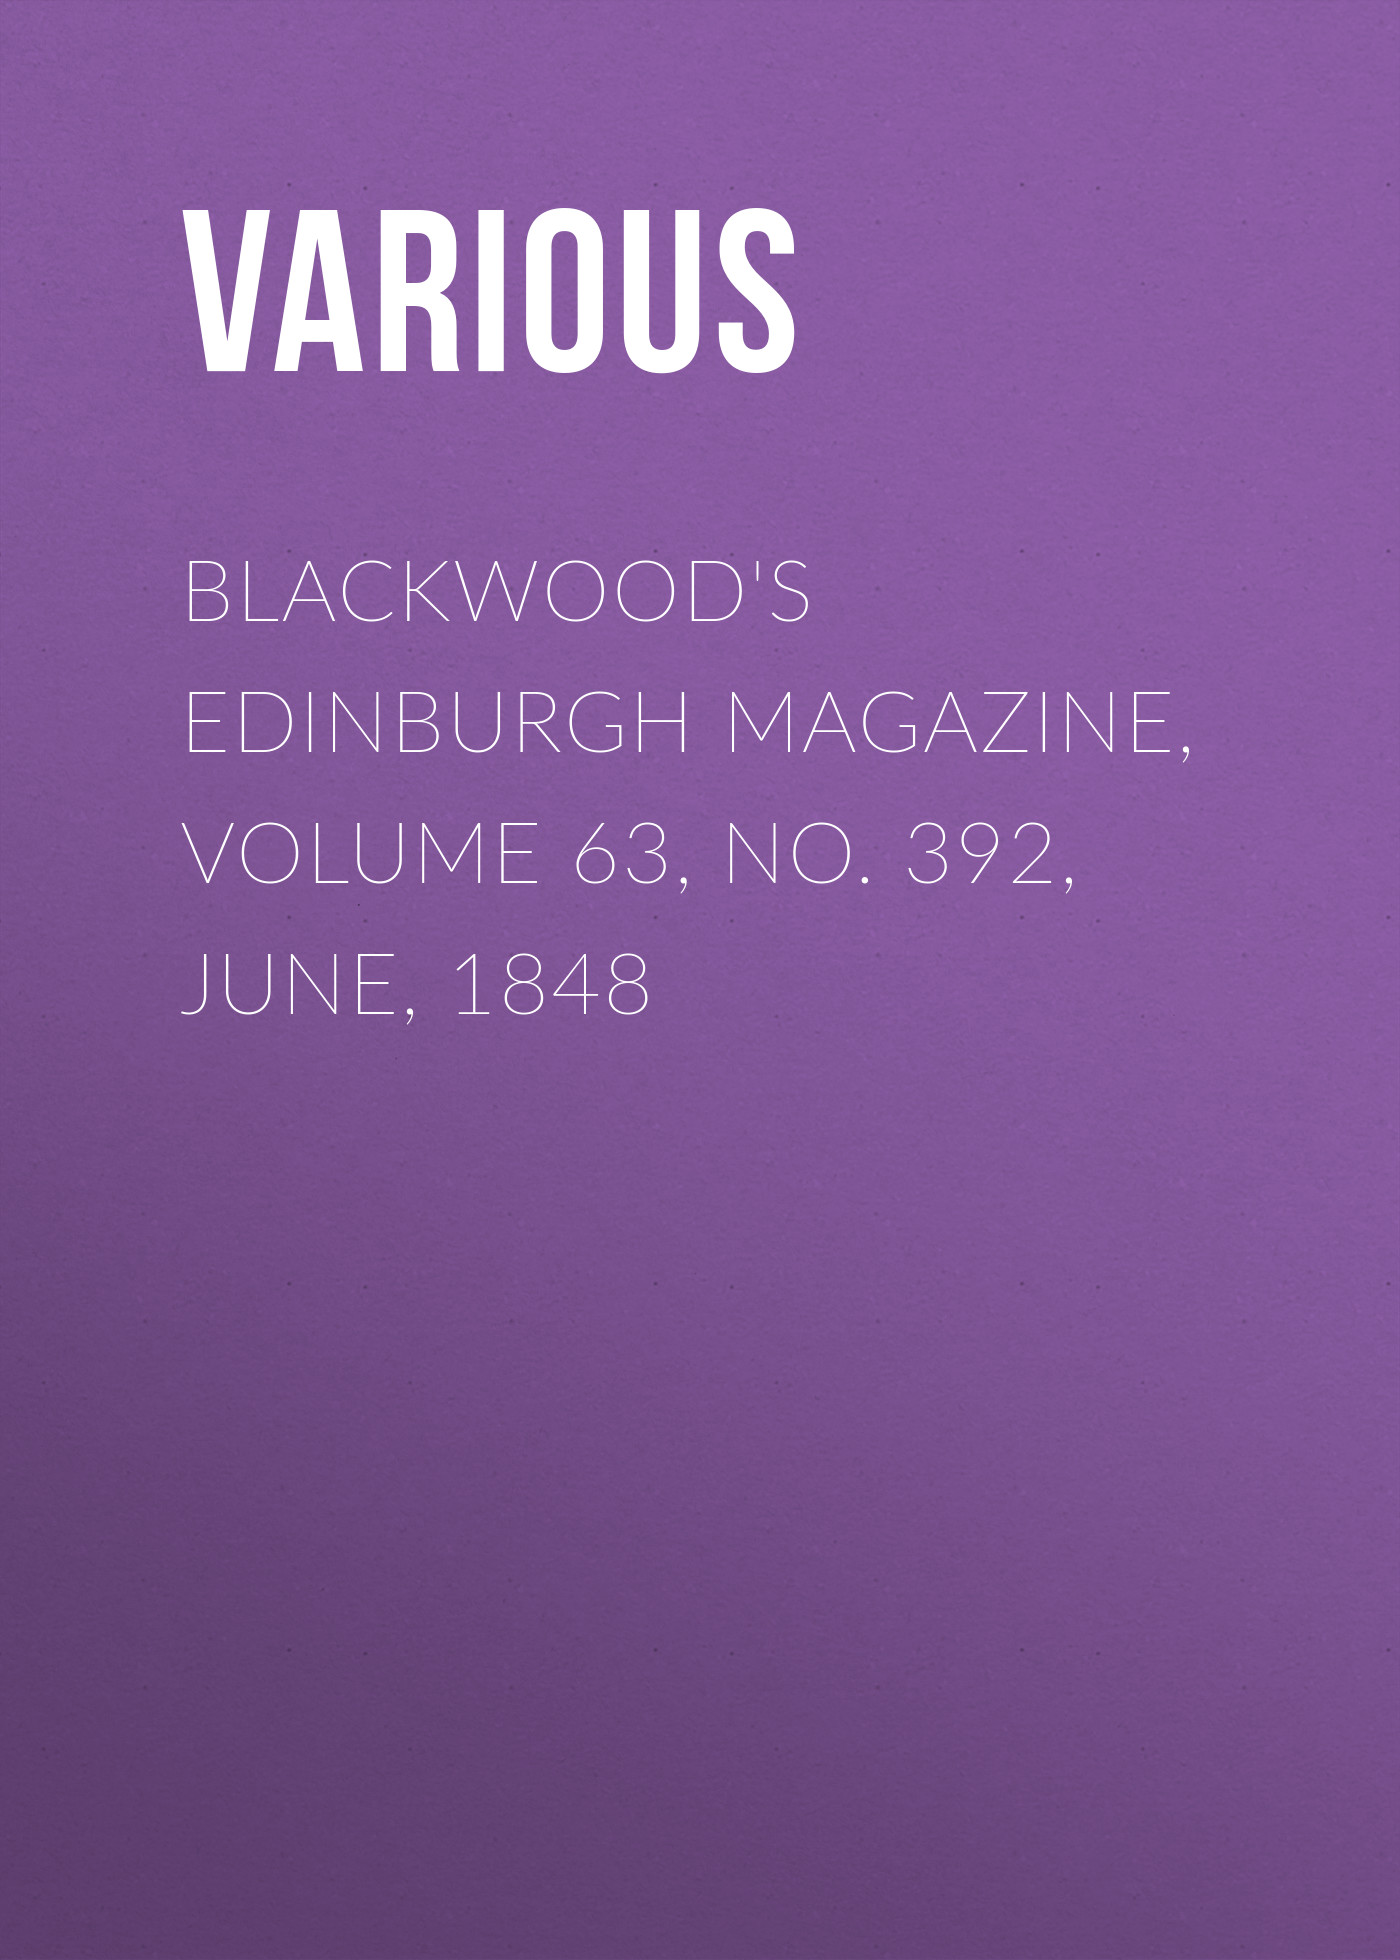 Книга Blackwood's Edinburgh Magazine, Volume 63, No. 392, June, 1848 из серии , созданная  Various, может относится к жанру Журналы, Зарубежная образовательная литература, Книги о Путешествиях. Стоимость электронной книги Blackwood's Edinburgh Magazine, Volume 63, No. 392, June, 1848 с идентификатором 25569487 составляет 0 руб.